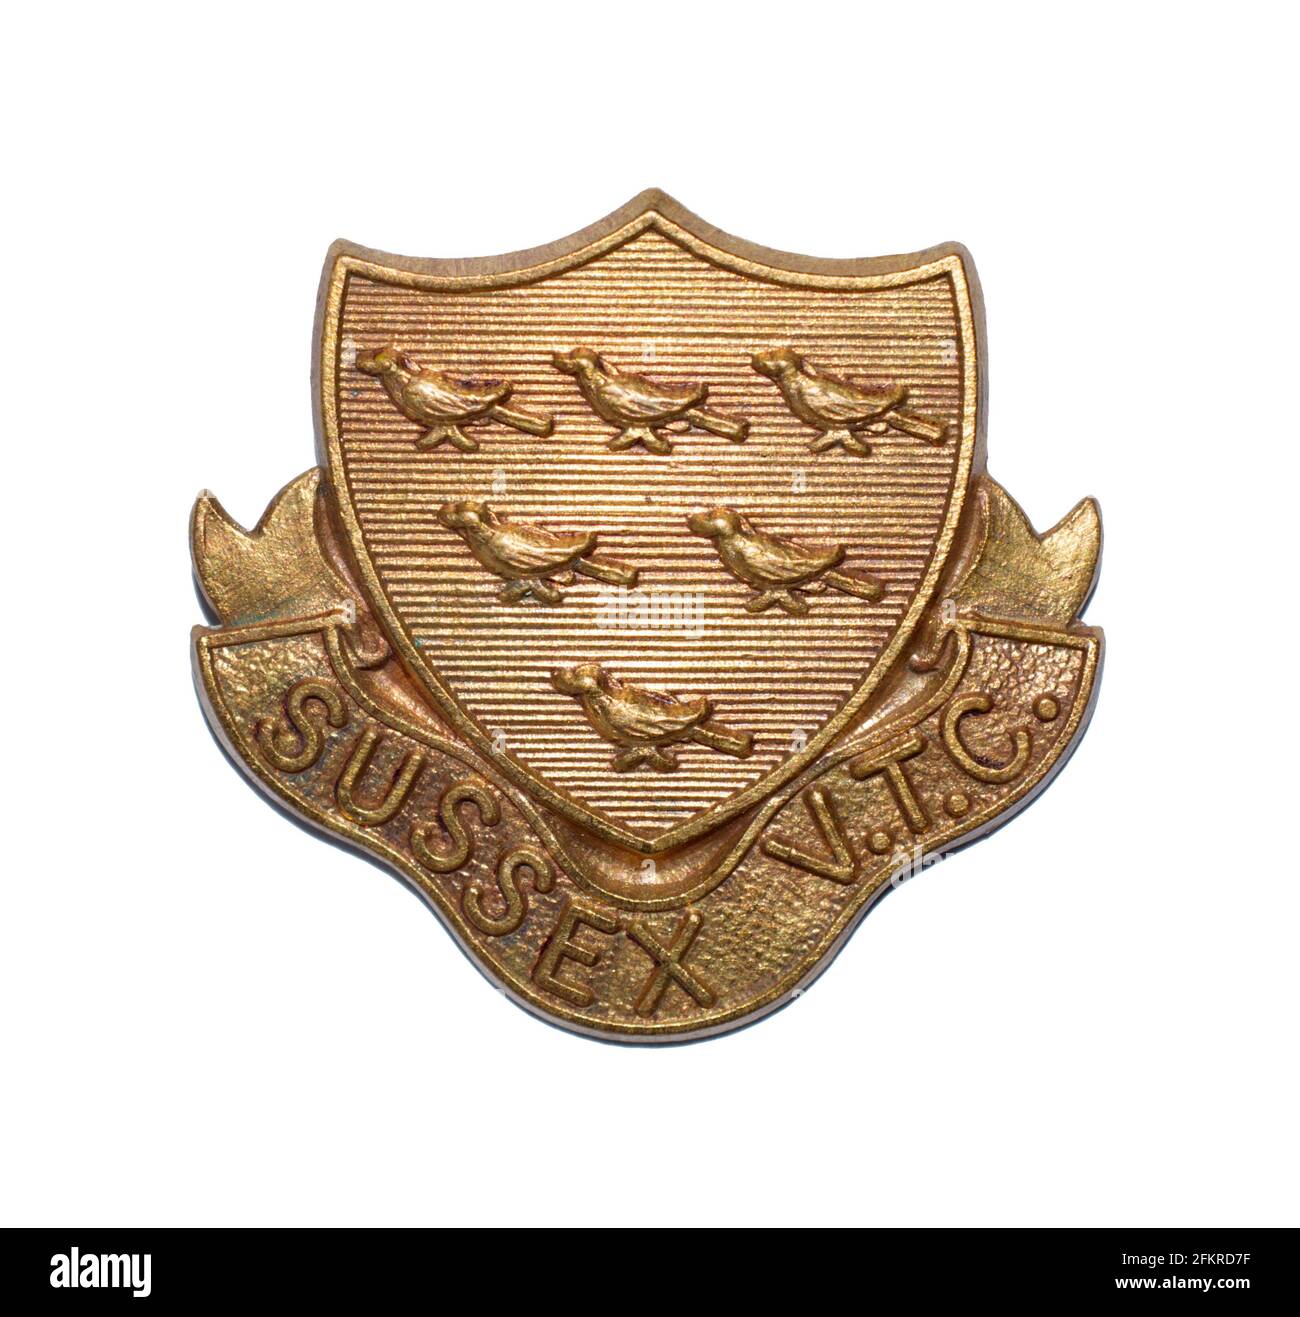 Una insignia de la gorra del Cuerpo de Entrenamiento Voluntario de Sussex, una unidad británica de la defensa del hogar de la Primera Guerra del Trabajo. La cresta muestra seis martlets, el emblema de Sussex. Foto de stock